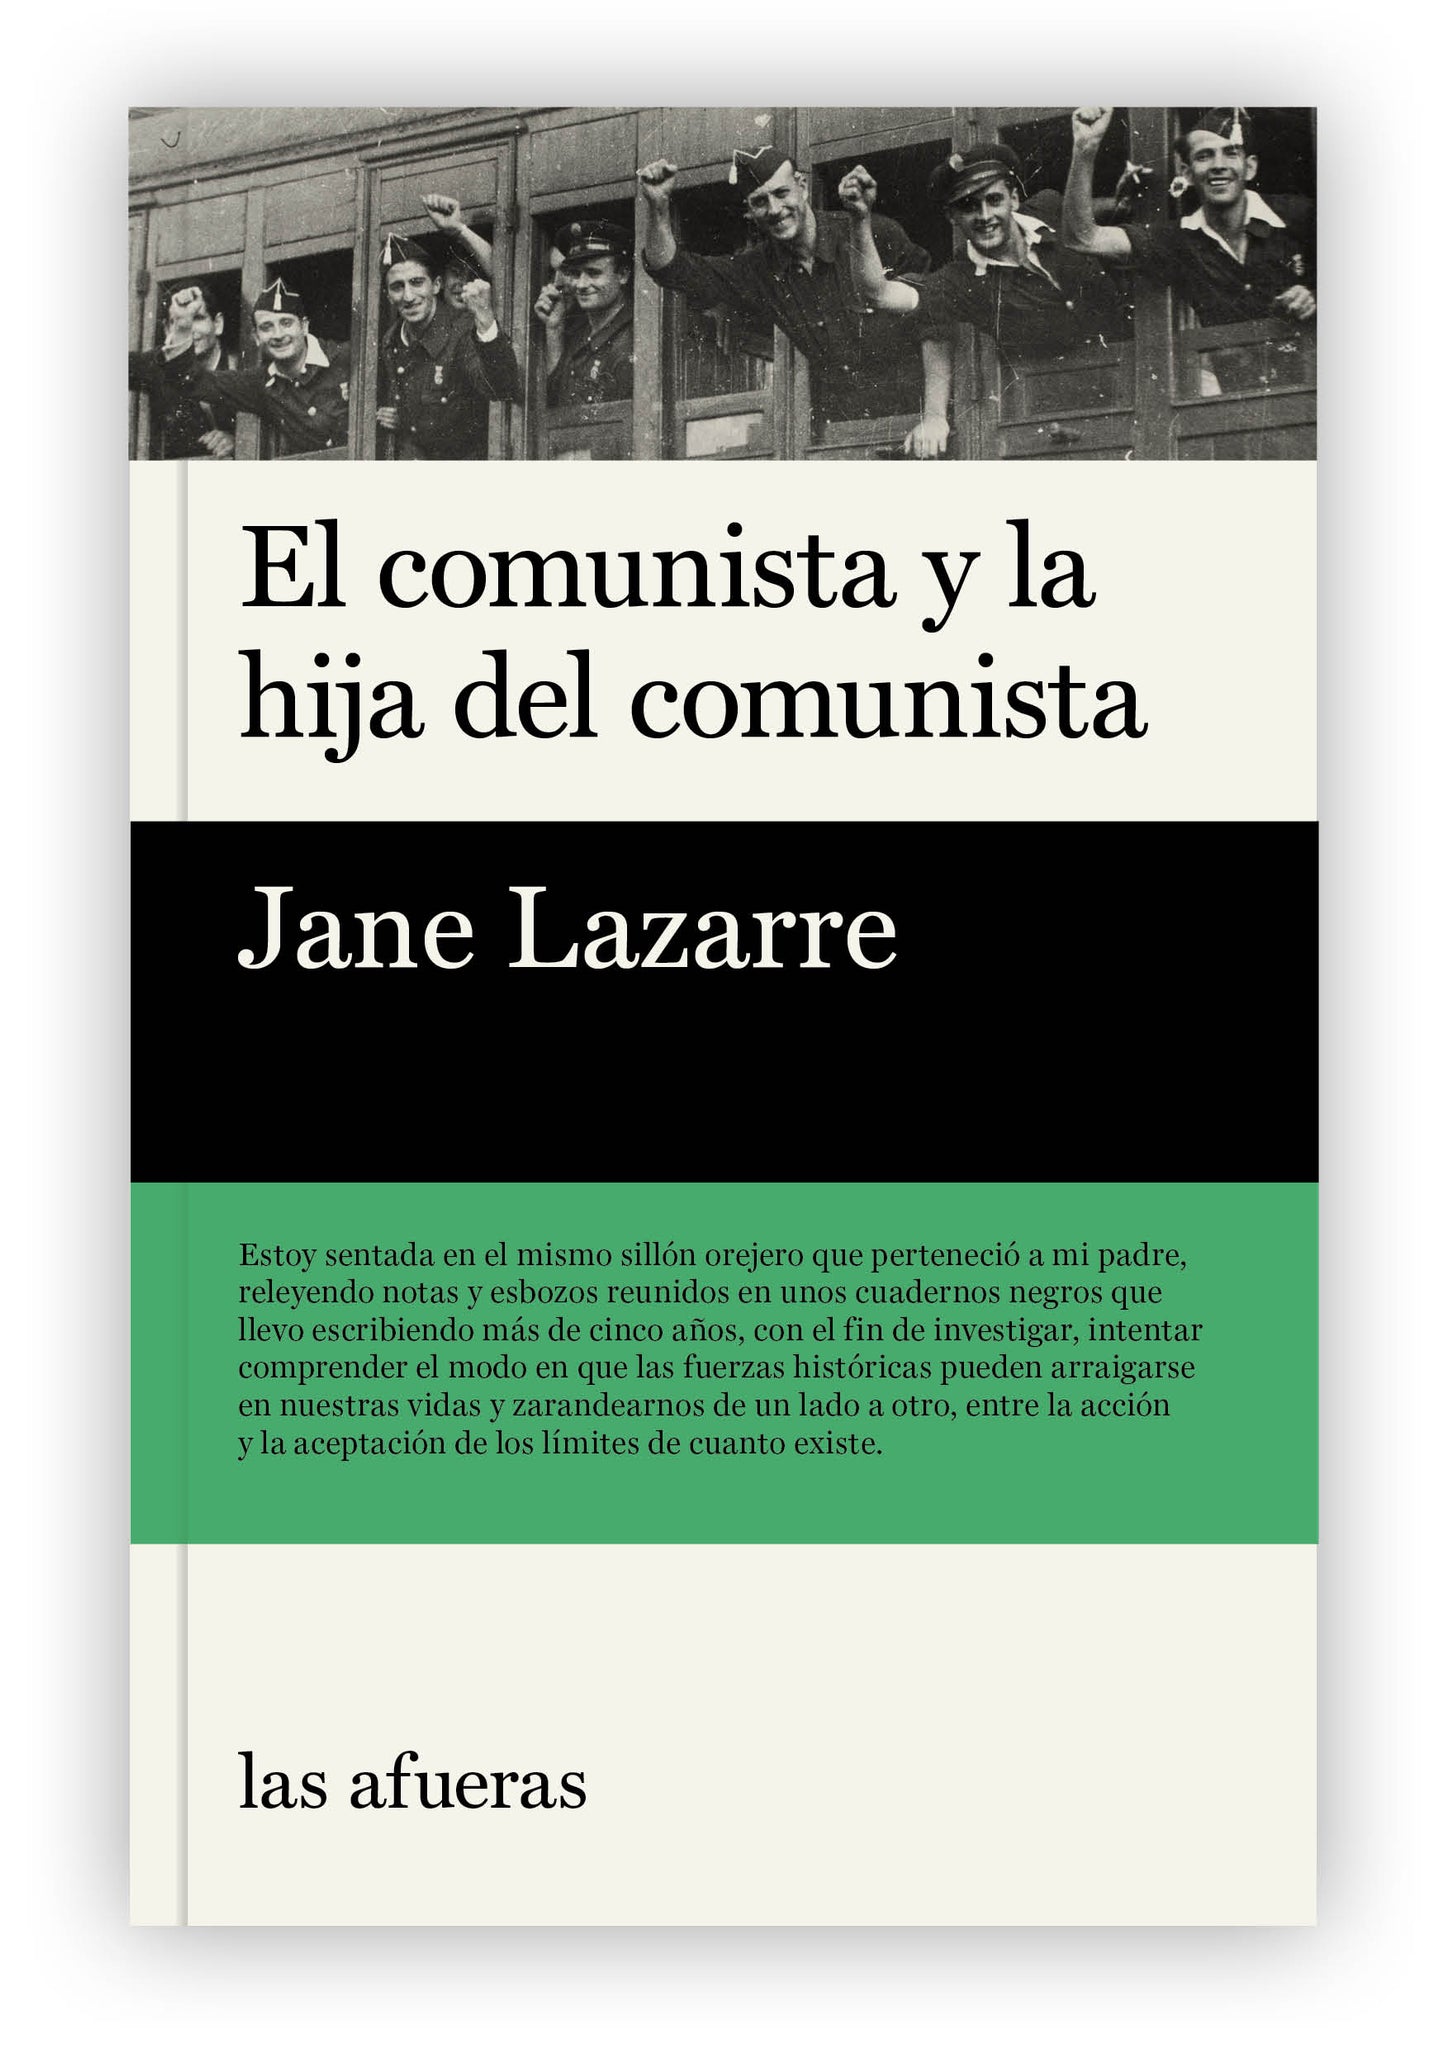 "El comunista y la hija del comunista", de Jane Lazarre